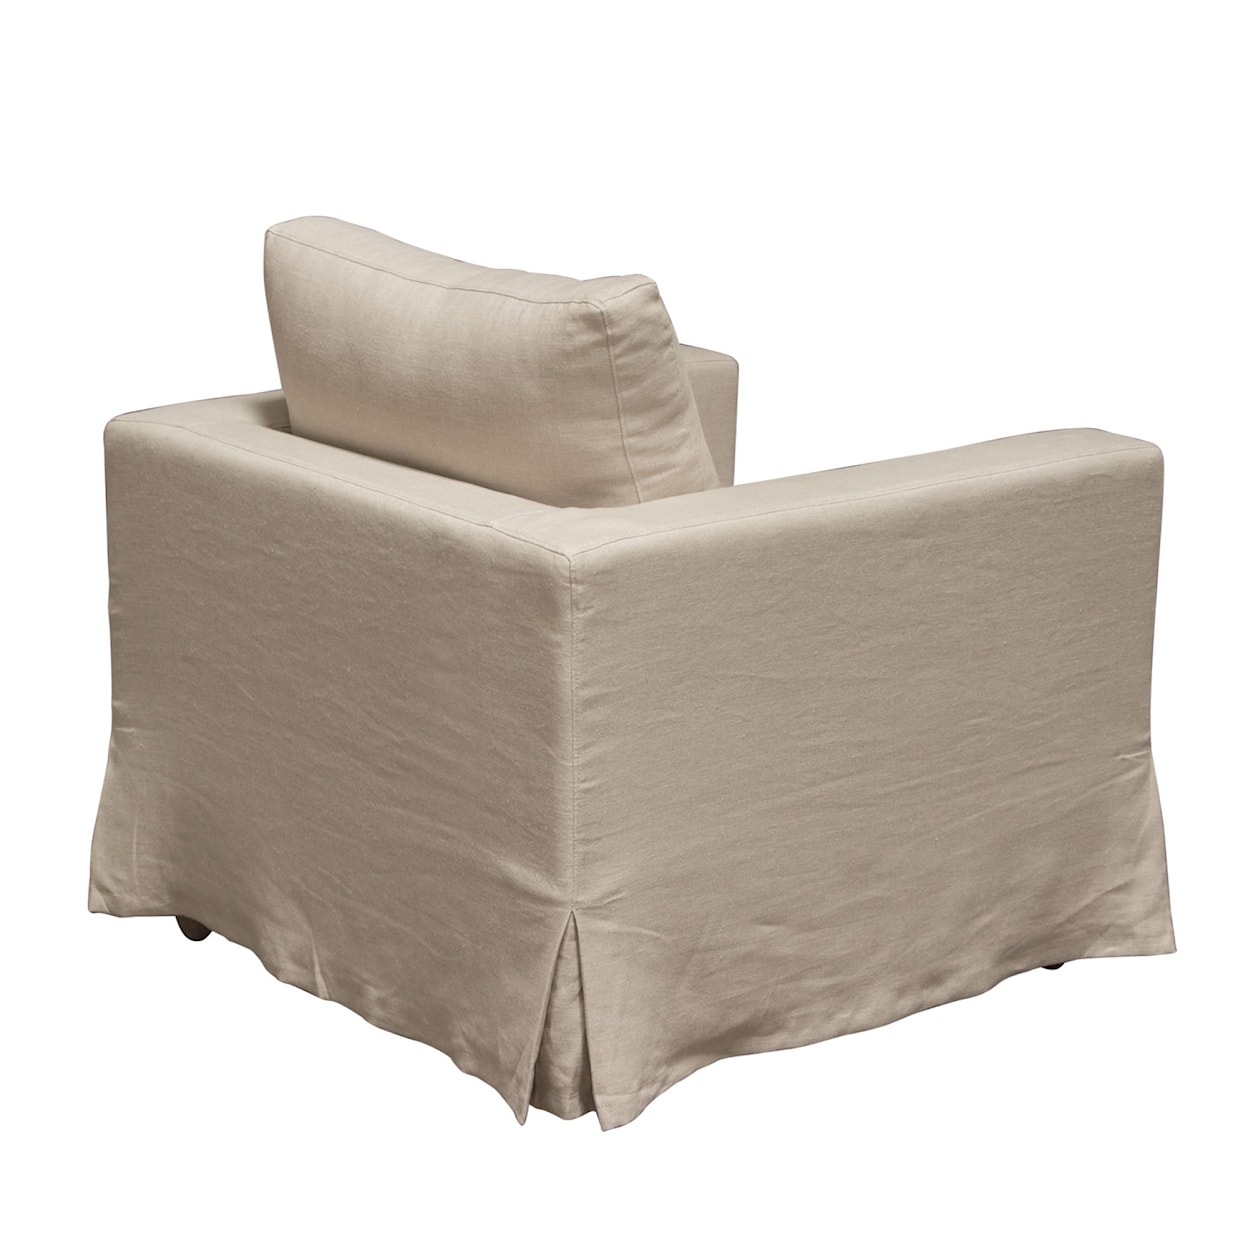 Diamond Sofa Furniture Savannah Slip-Cover Chair In Sand Natural Linen